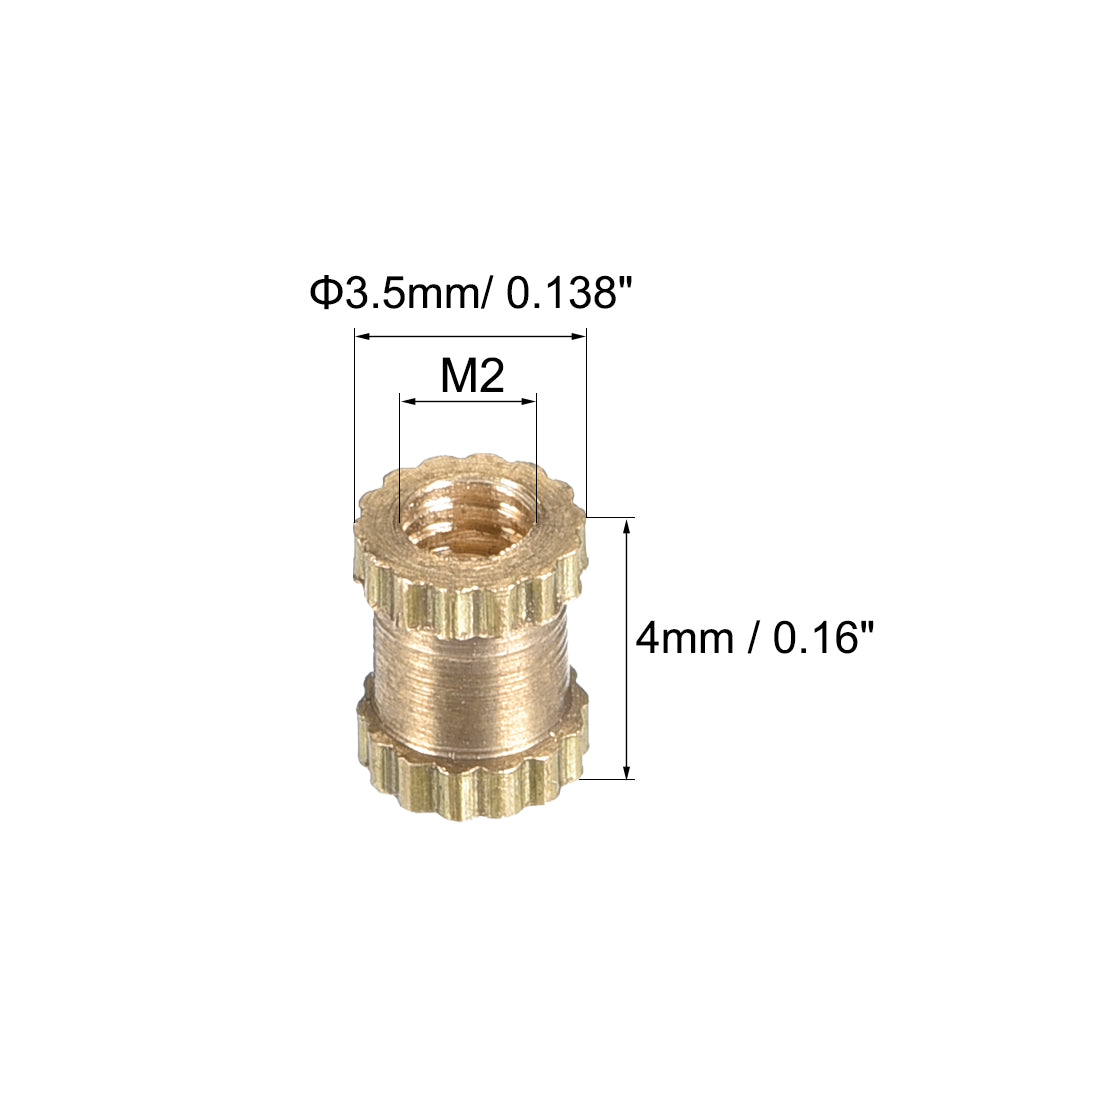 uxcell Uxcell M2 x 4mm(L) x 3.5mm(OD) Brass Knurled Threaded Insert Embedment Nuts, 20 Pcs